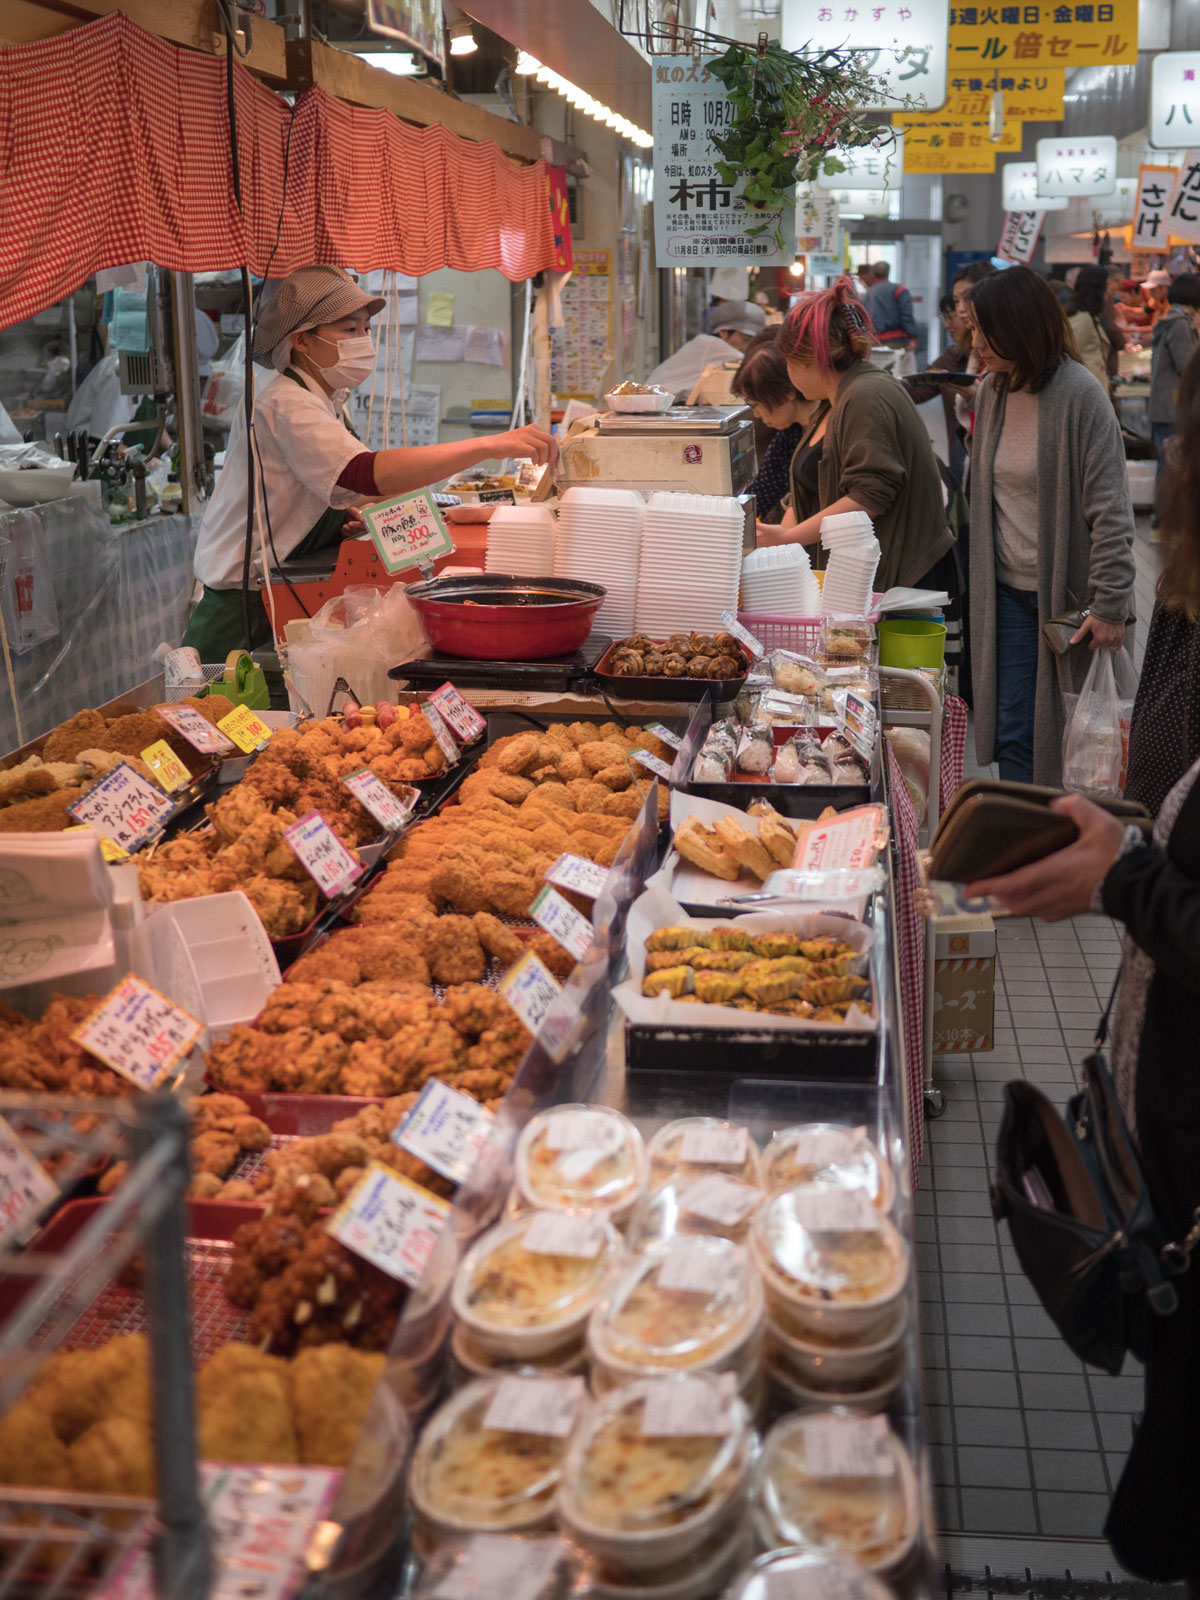 弘前「虹のマート」焼き魚の店とは反対側の一角の惣菜屋　撮影：DMC-GX8 + LEICA DG 12-60mm